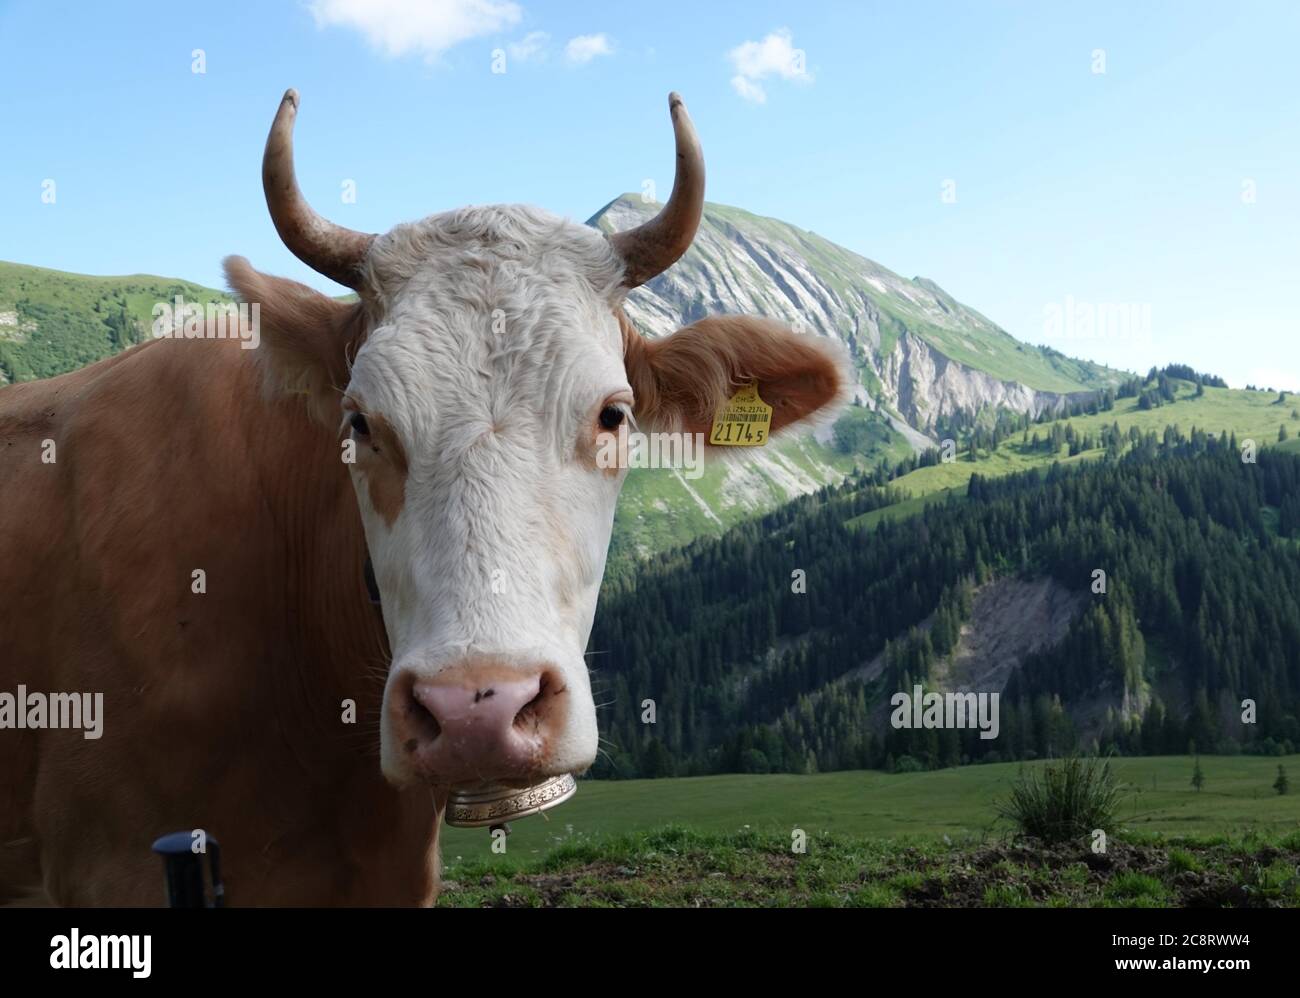 Habkern, Schweiz. Juli 2020. Eine Kuh steht auf einer Weide im Berner Oberland in der Schweiz. Die Bauern lassen ihre Tiere den ganzen Sommer über auf den saftigen Bergwiesen, was dem aus ihrer Milch hergestellten Käse einen besonderen Geschmack verleiht. (To dpa: 'Kuh und Käse statt Corona: Working Summer on the Swiss Alps') Quelle: Christiane Oelrich/dpa/Alamy Live News Stockfoto